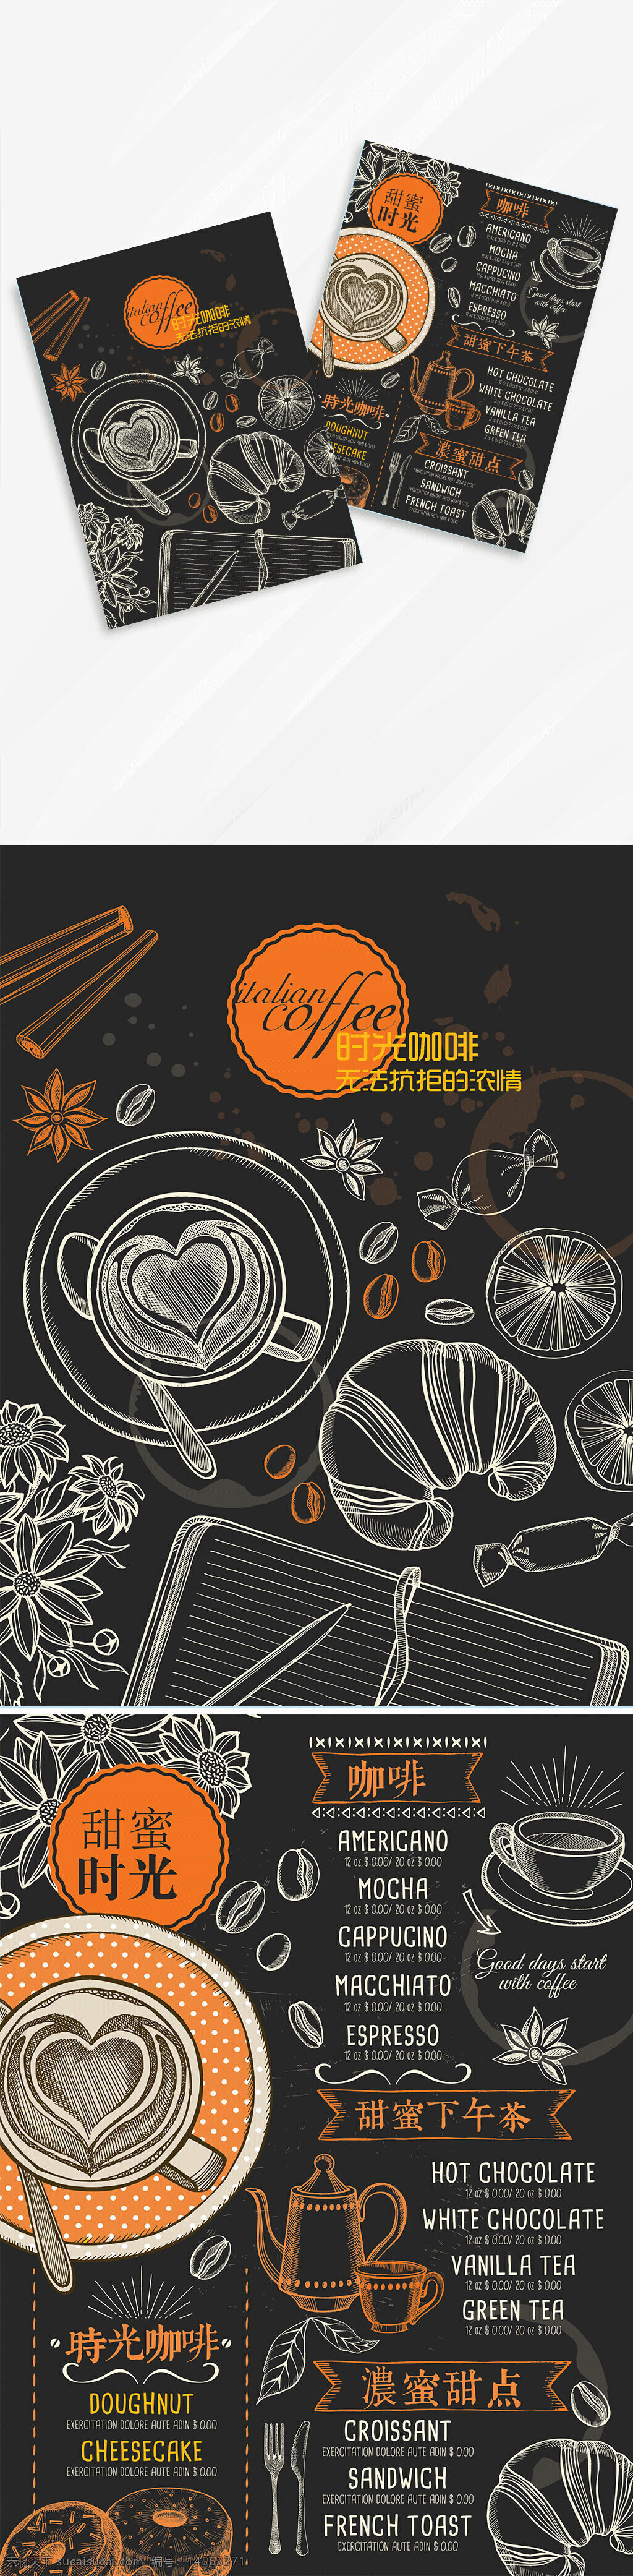 咖啡 价格单 白底 咖啡豆 咖色 设计 广告设计 海报设计 300dpi psd